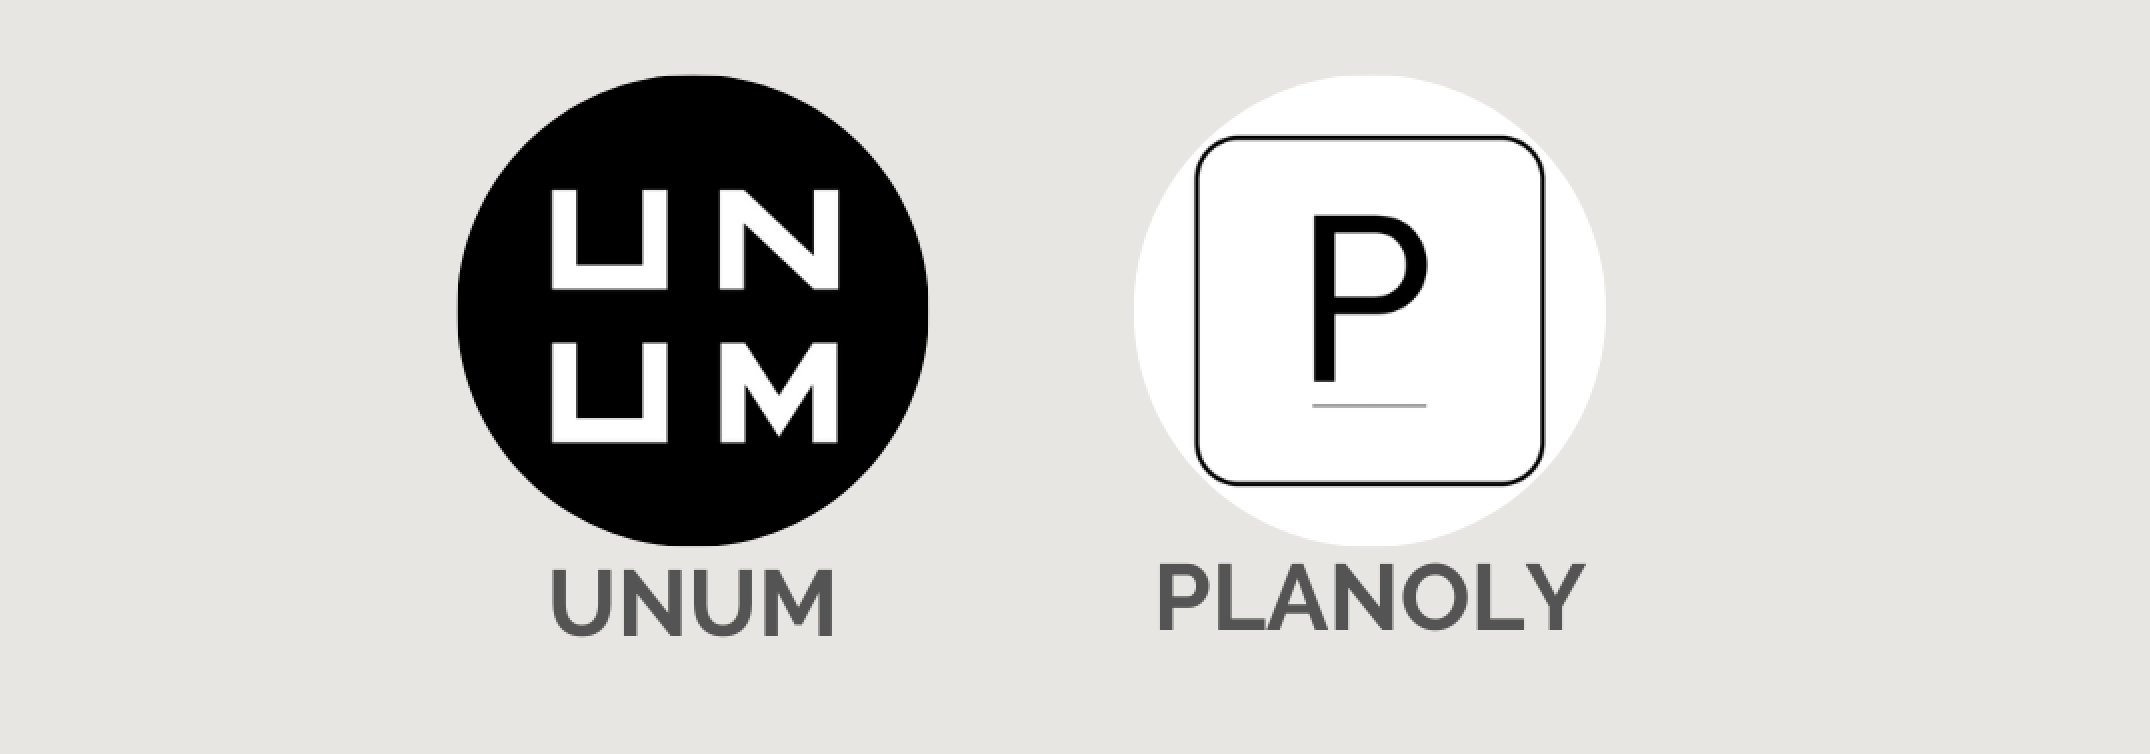 Apps para organizar y planificar unum planoly